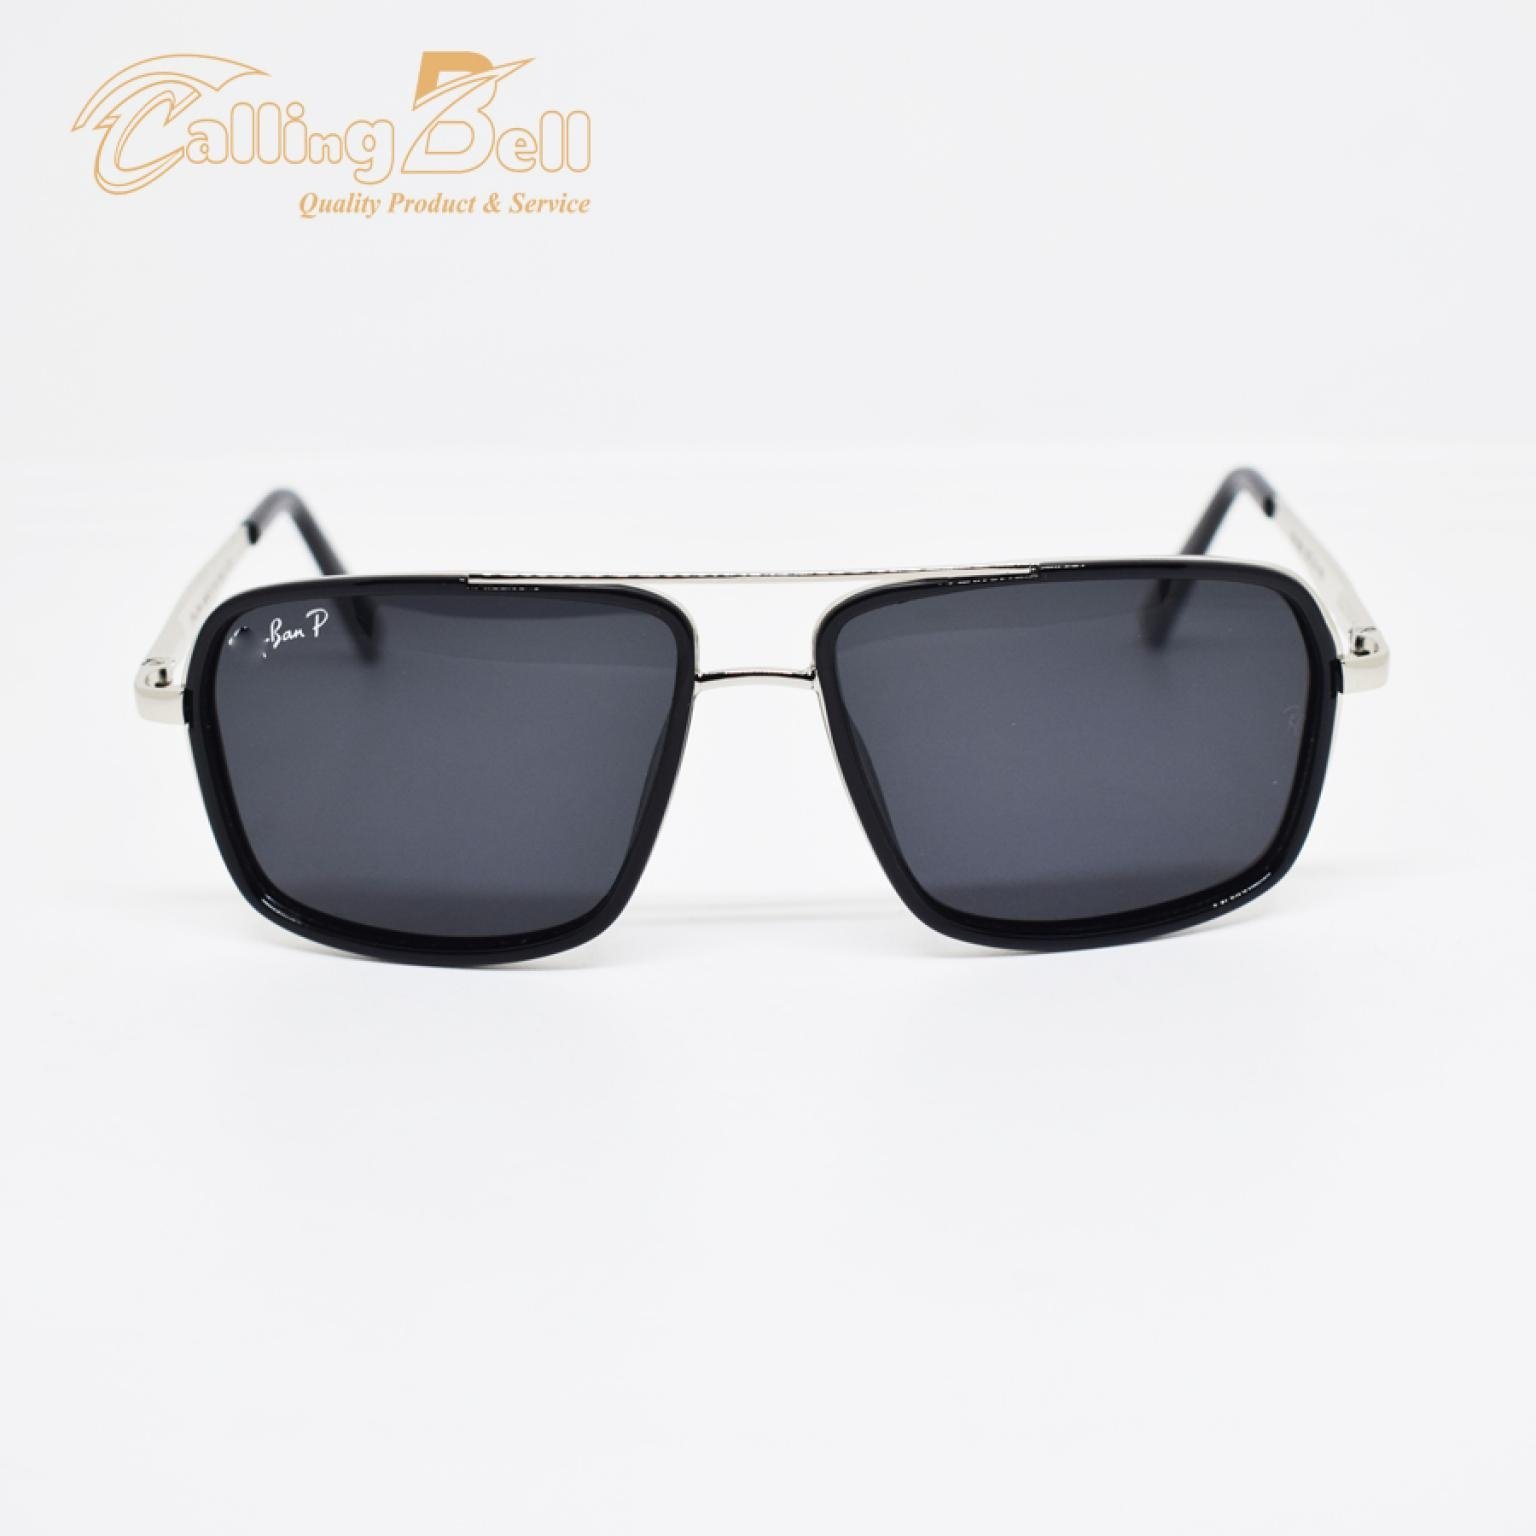 Rectangular Black Sunglass With Polarized Lens Uv400 For Men Women